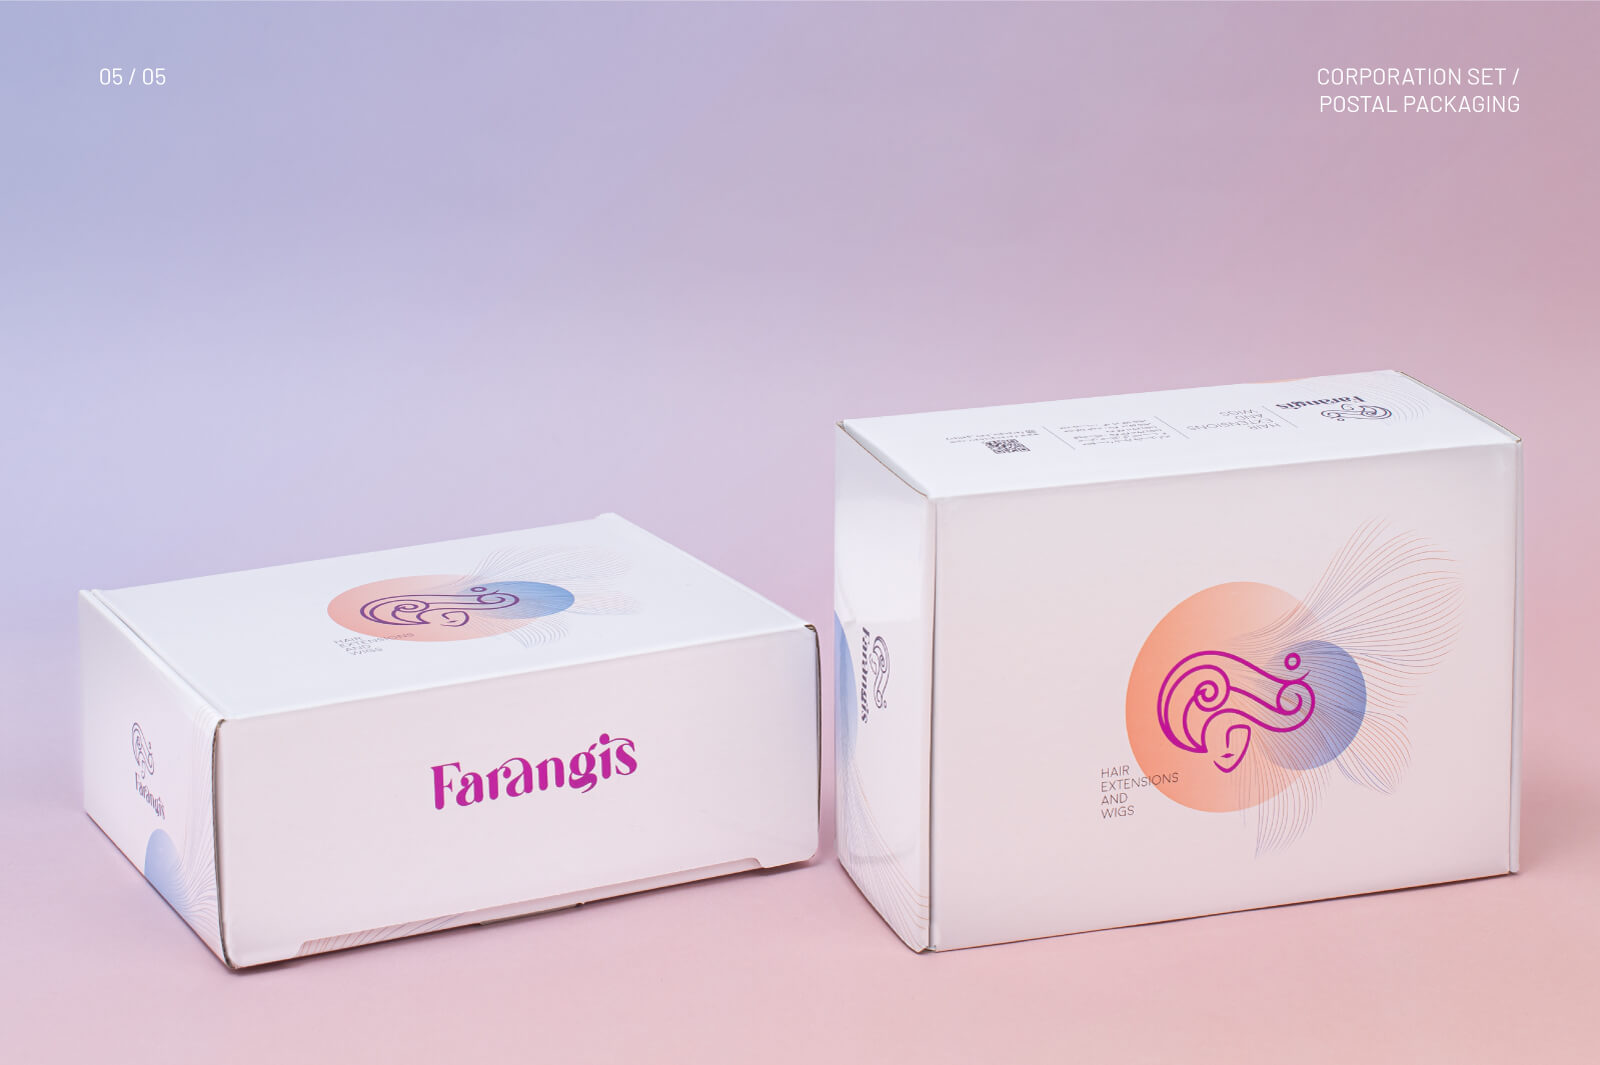 Farangis-Postal-Packaging